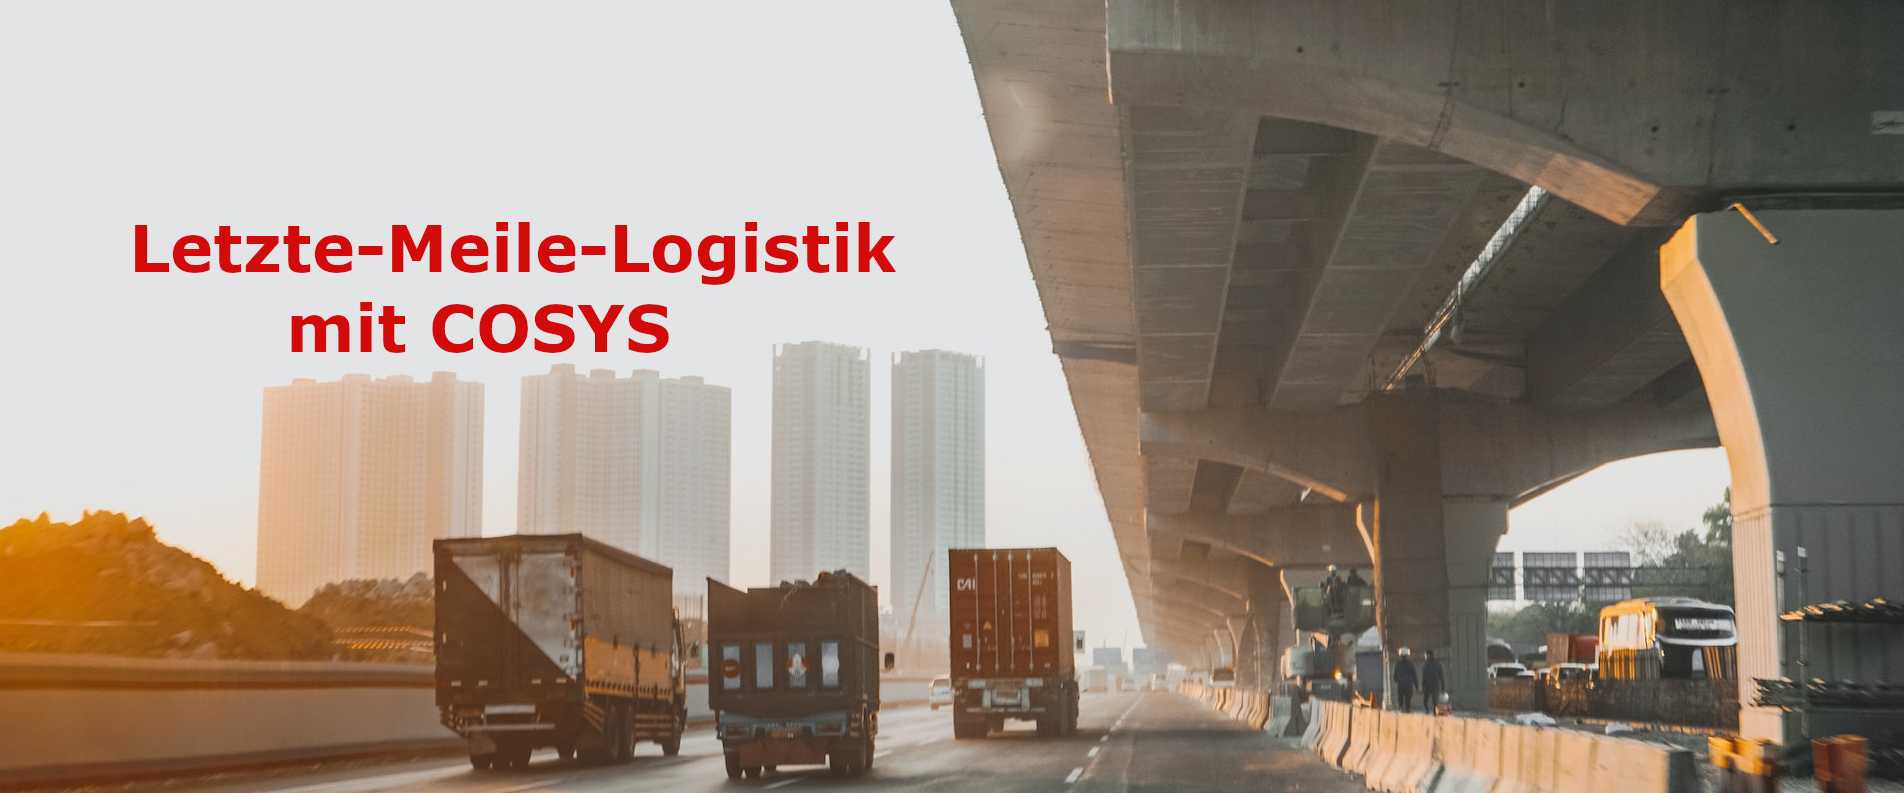 Die Logistik der letzten Meile mit COSYS bewältigen